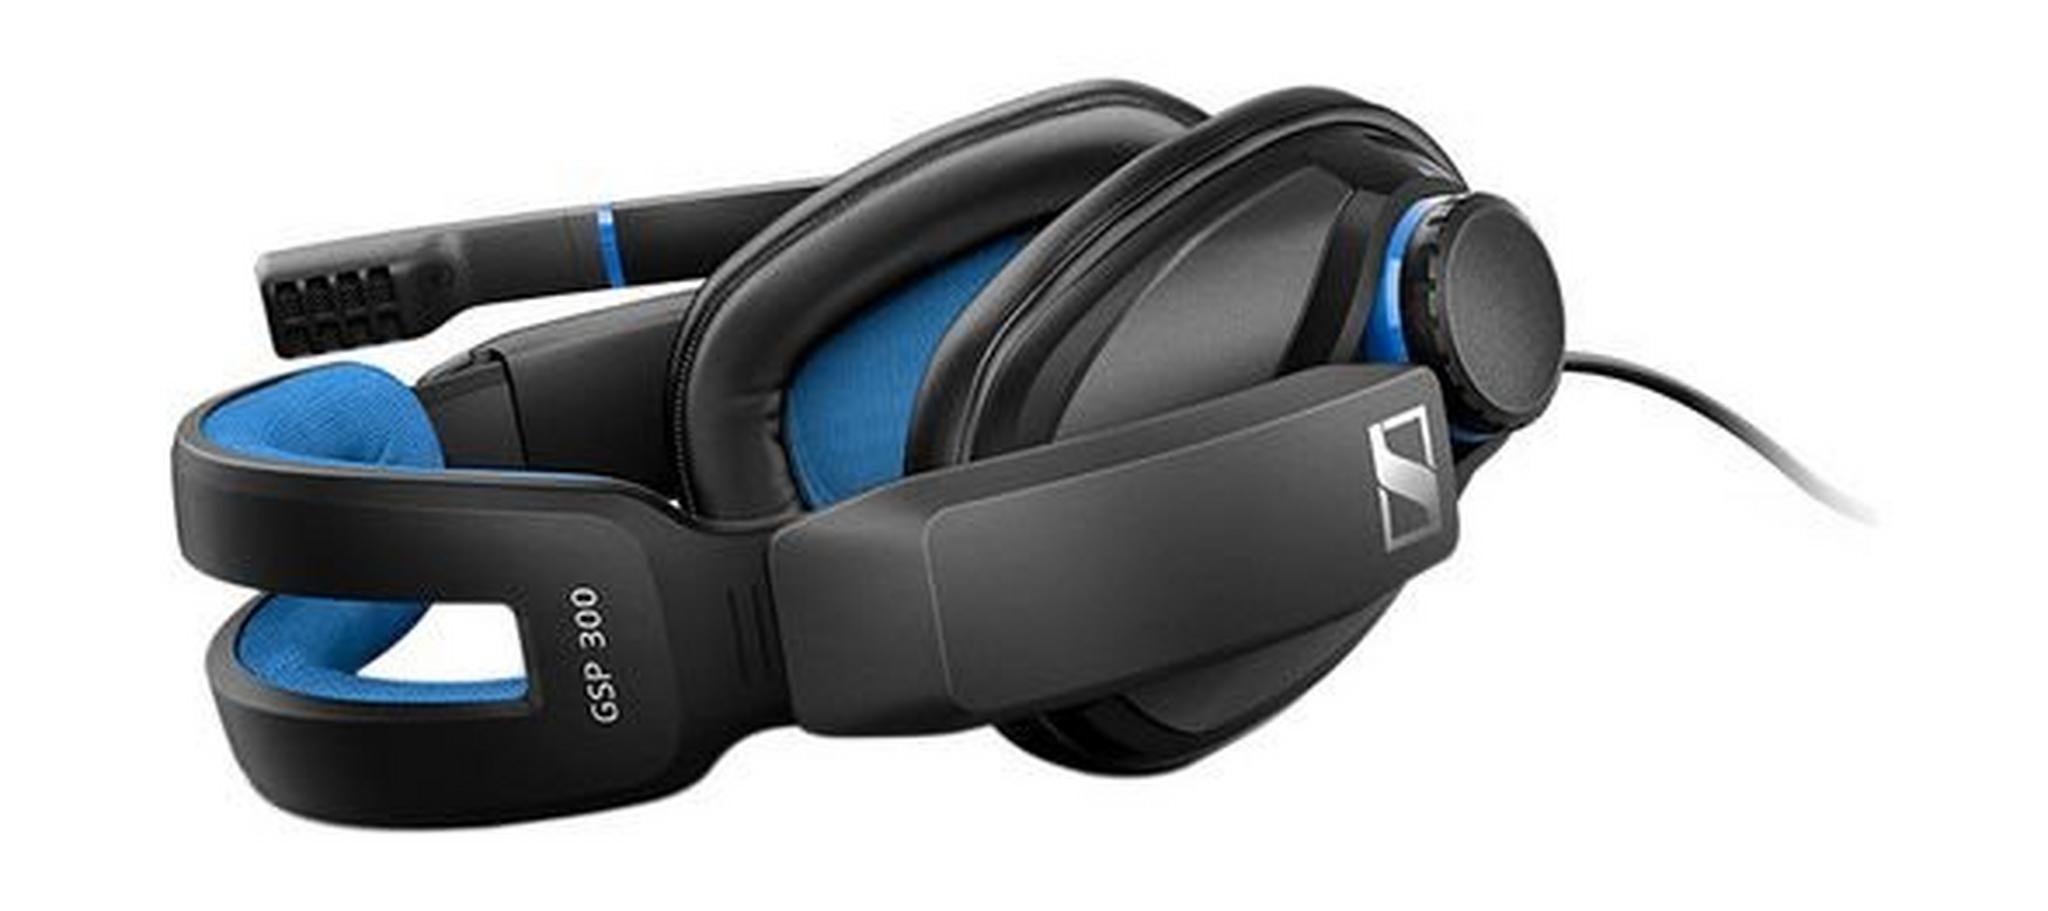 Sennheiser GSP 300 Wired Gaming Headset - Black